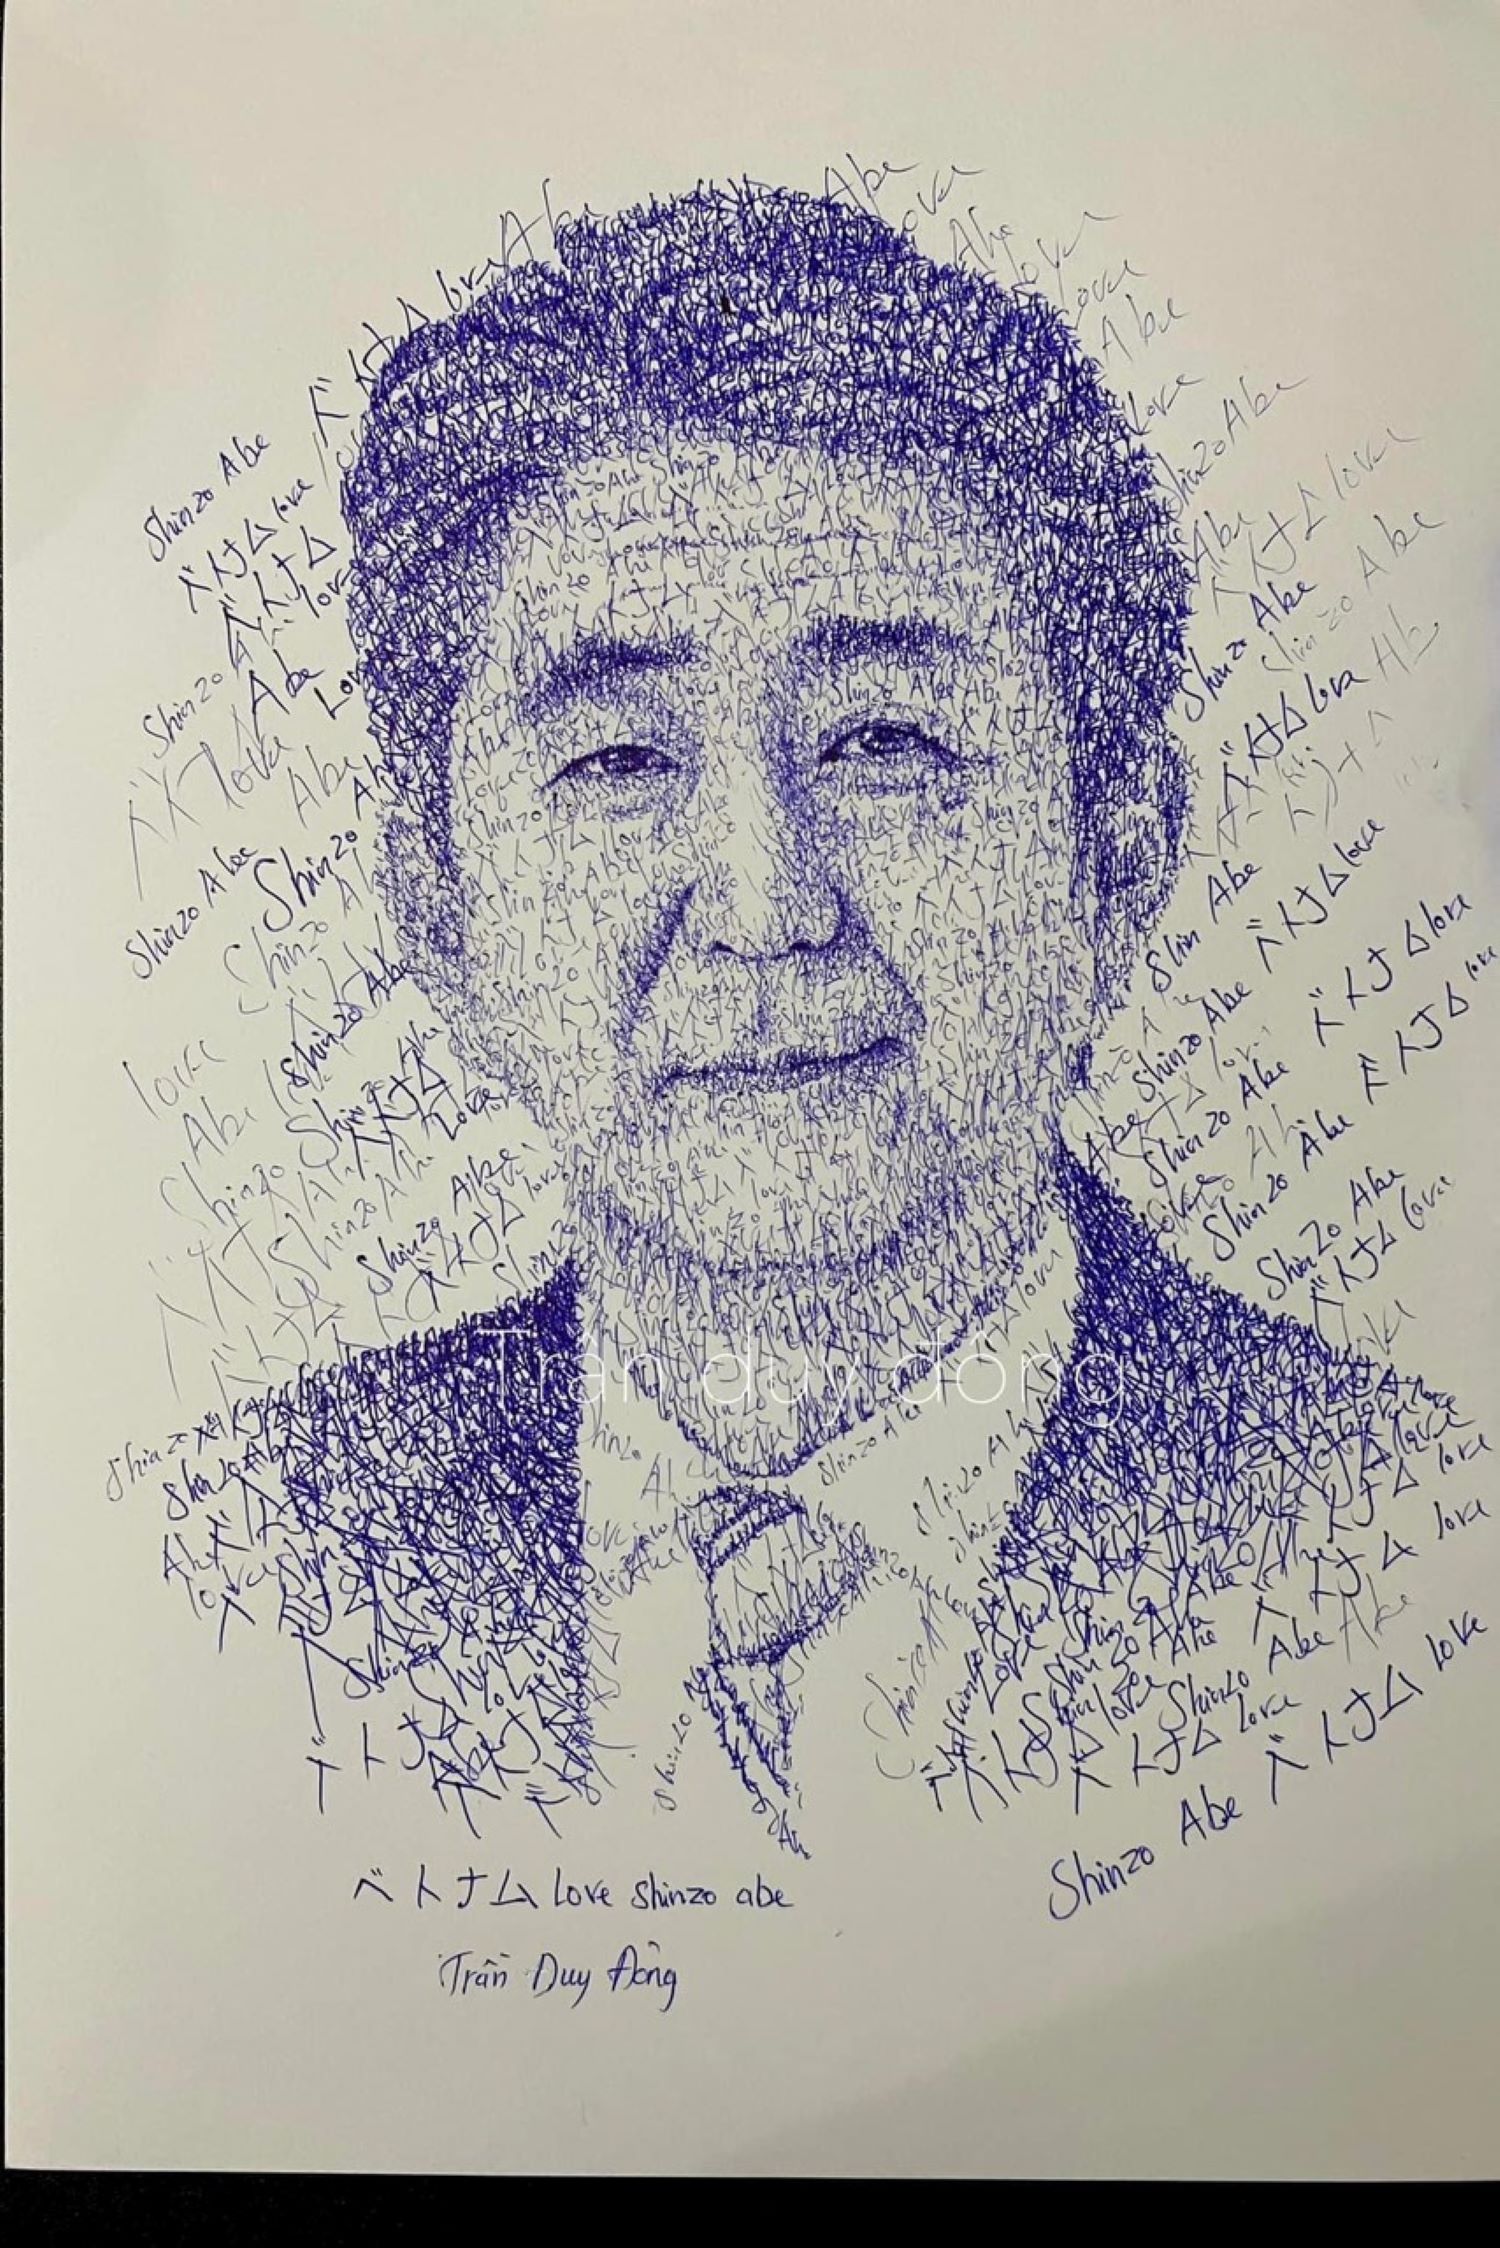 Bức chân dung ông Shinzo Abe sẽ khiến bạn ngỡ ngàng với mức độ chân thực và tinh tế. Hàng nét trên gương mặt ông được vẽ rất chi tiết và chân thực với ý nghĩa sâu sắc khiến bạn có được một cái nhìn khác về người đàn ông tài năng và nhiệt thành này.